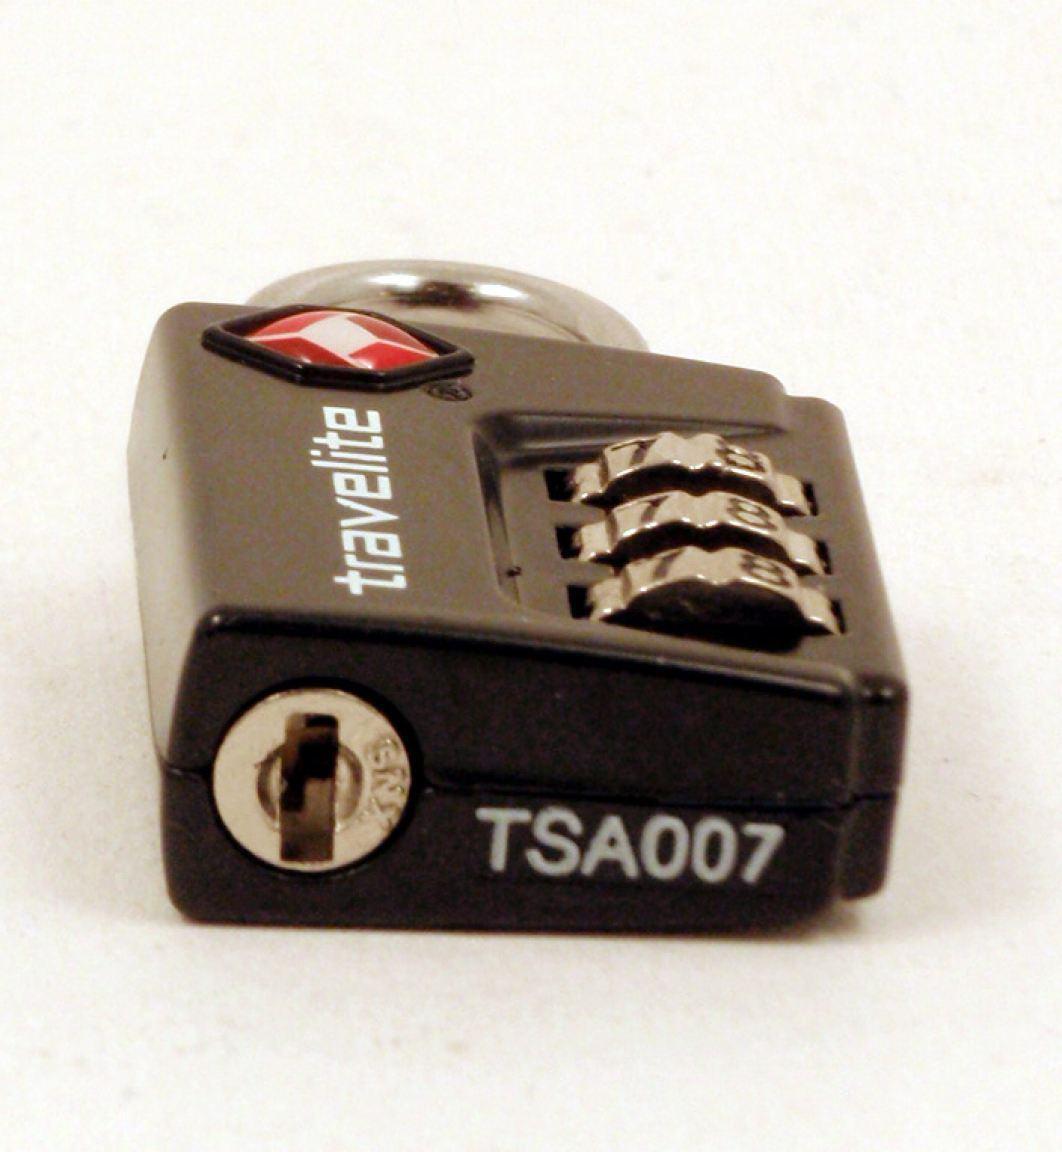 Travelite TSA-Kofferschloss